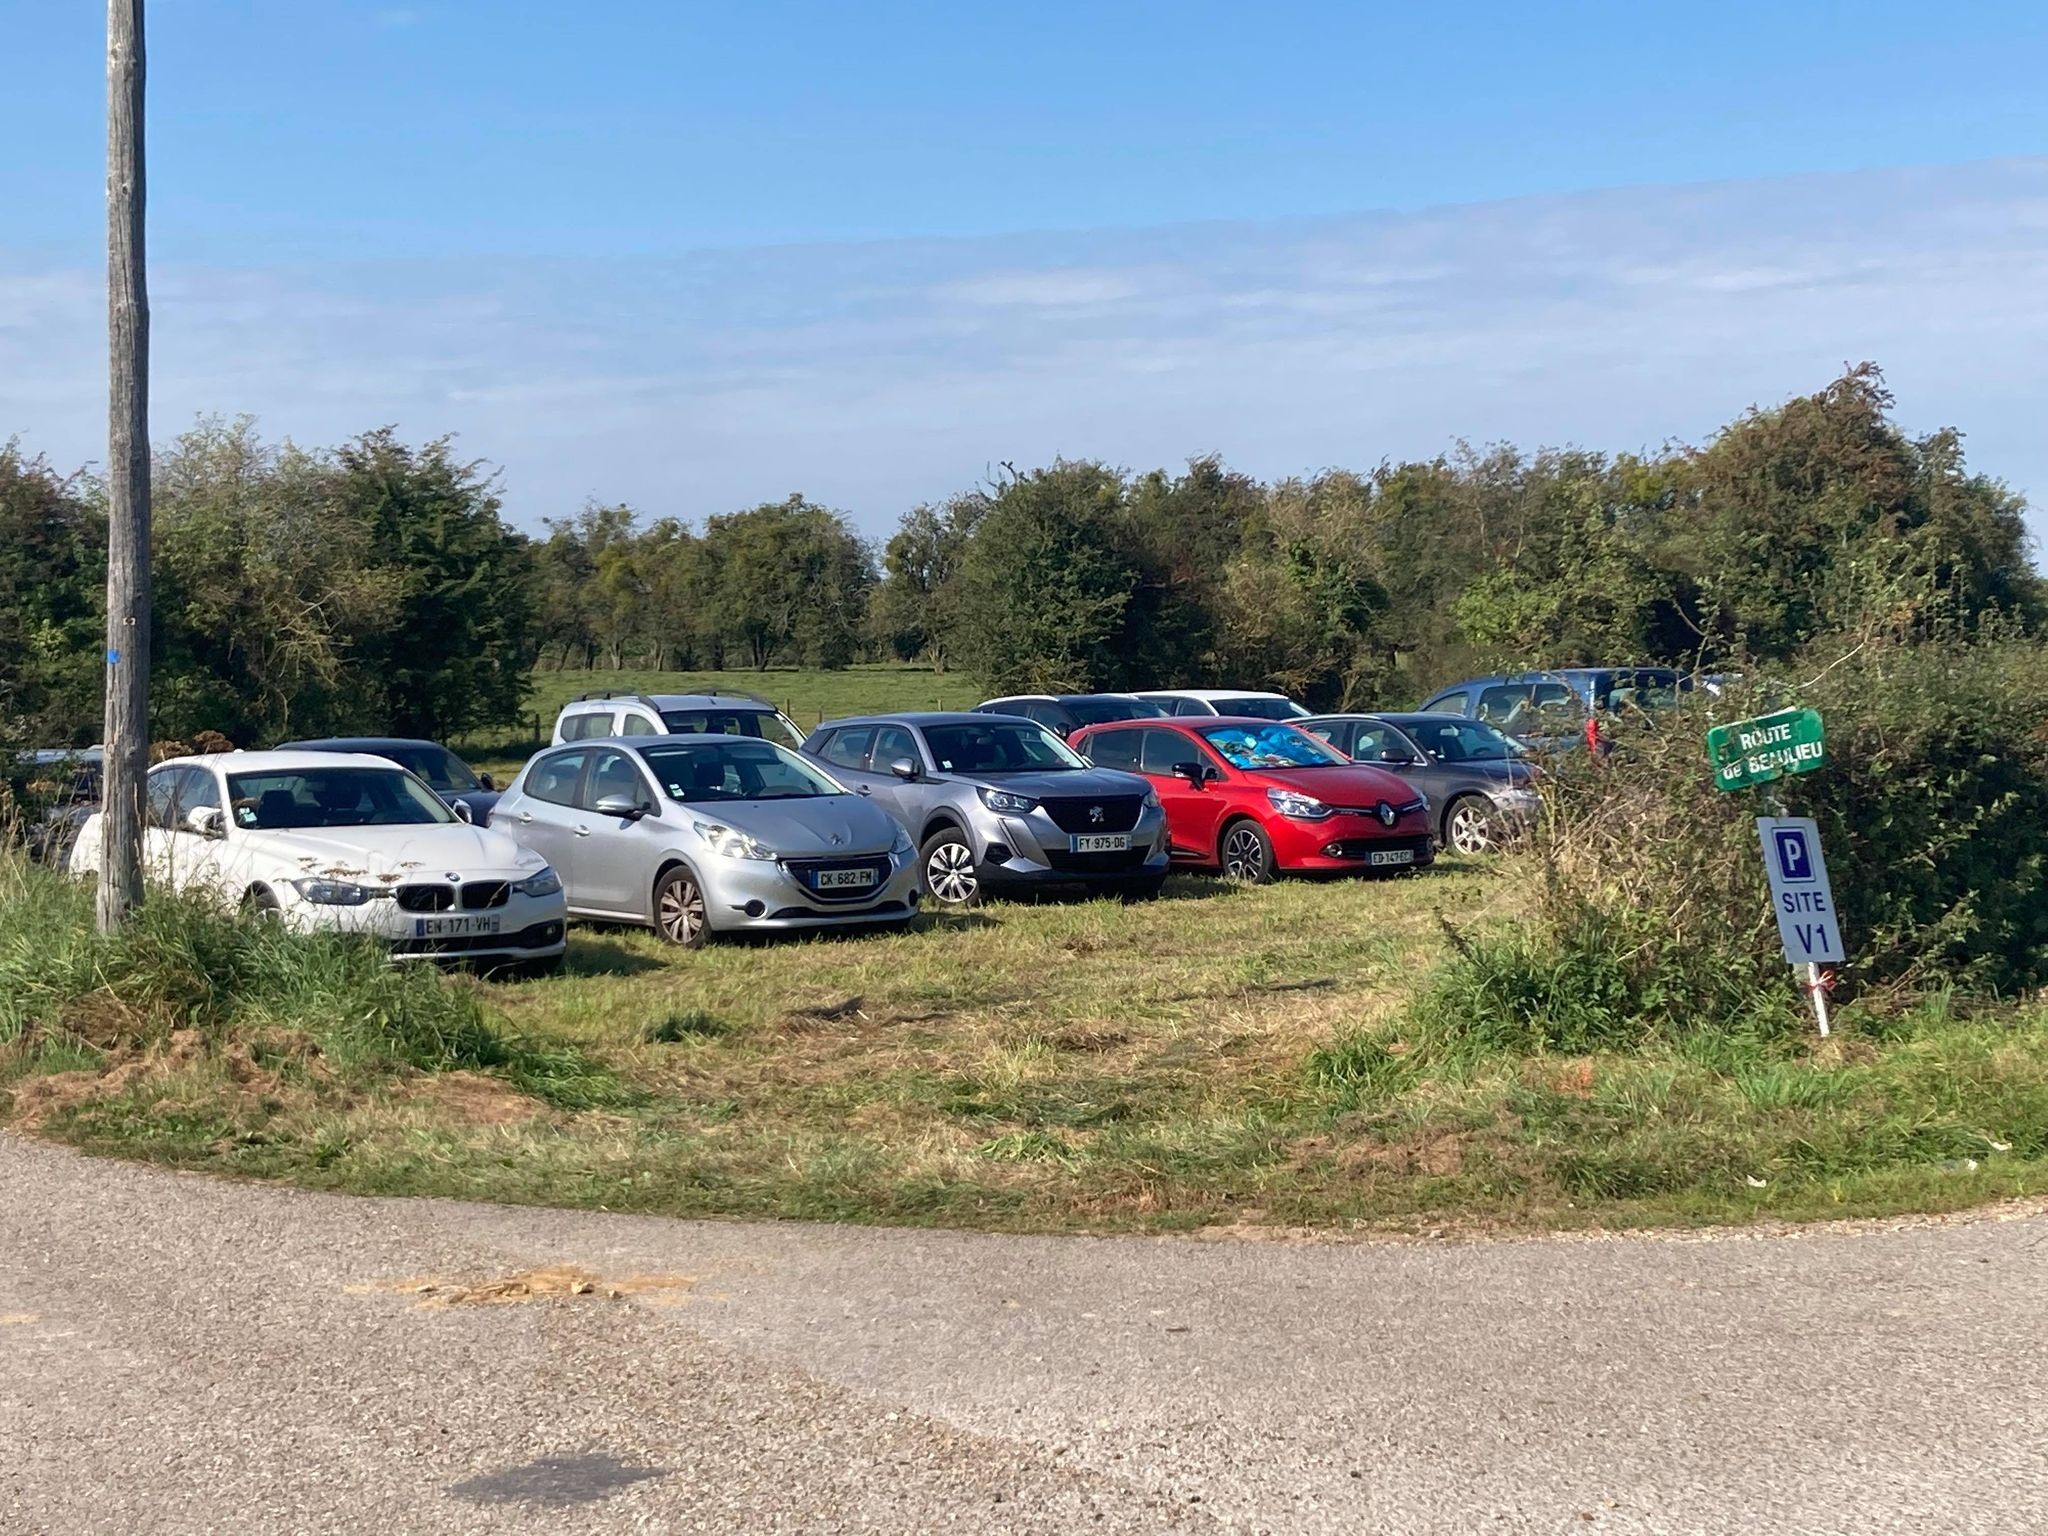 Parking Site V1 - Campneuseville jep 2021